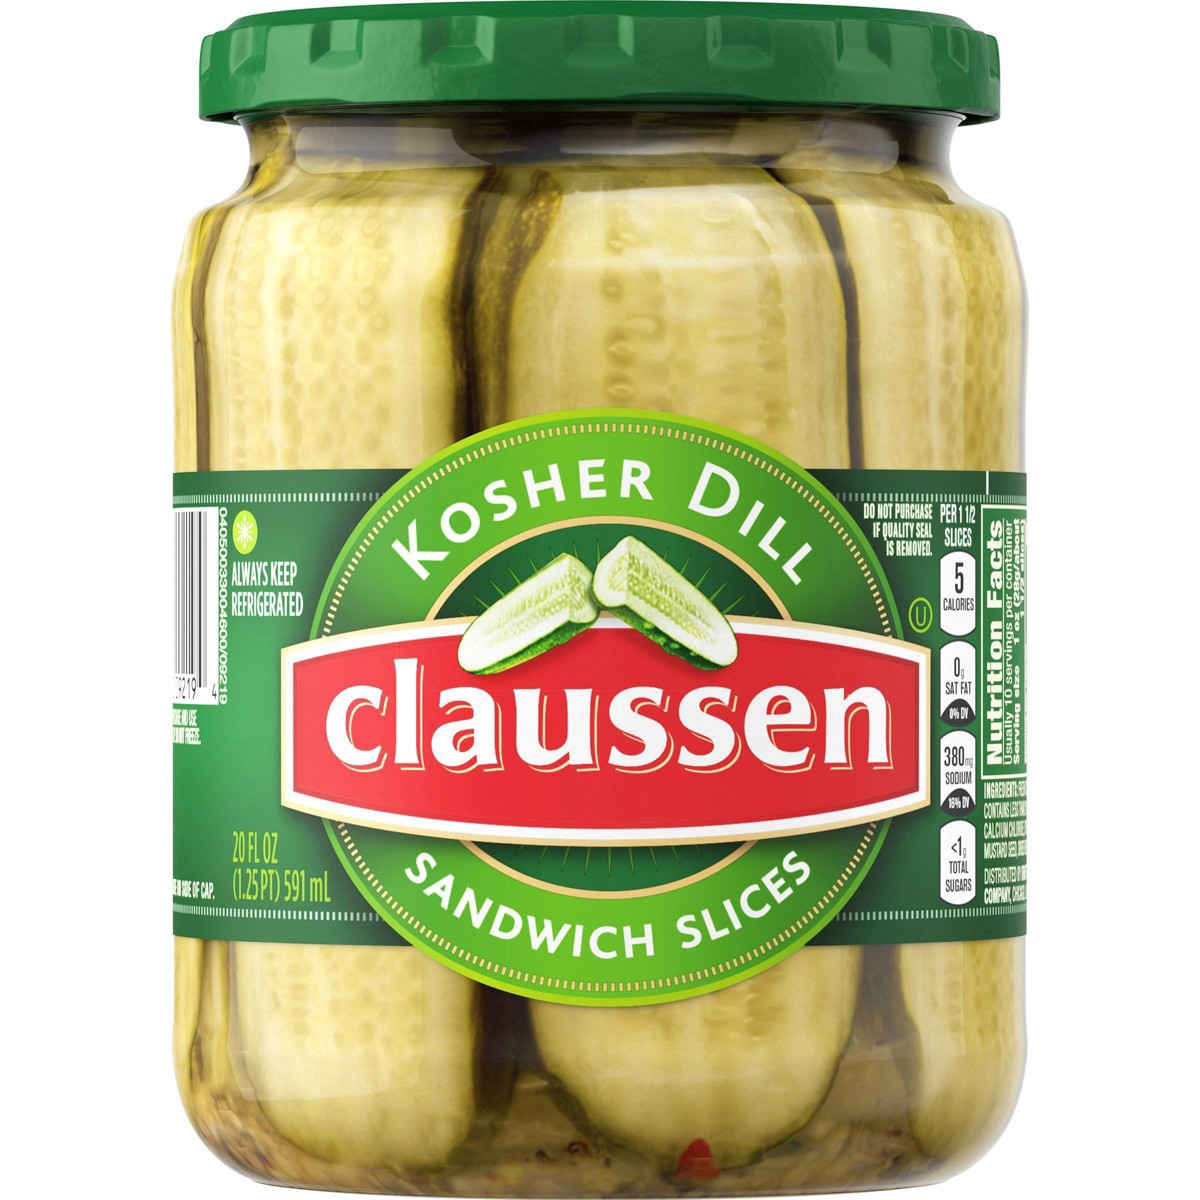 slide 12 of 144, Claussen Kosher Dill Pickle Sandwich Slices, 20 fl. oz. Jar, 20 fl oz